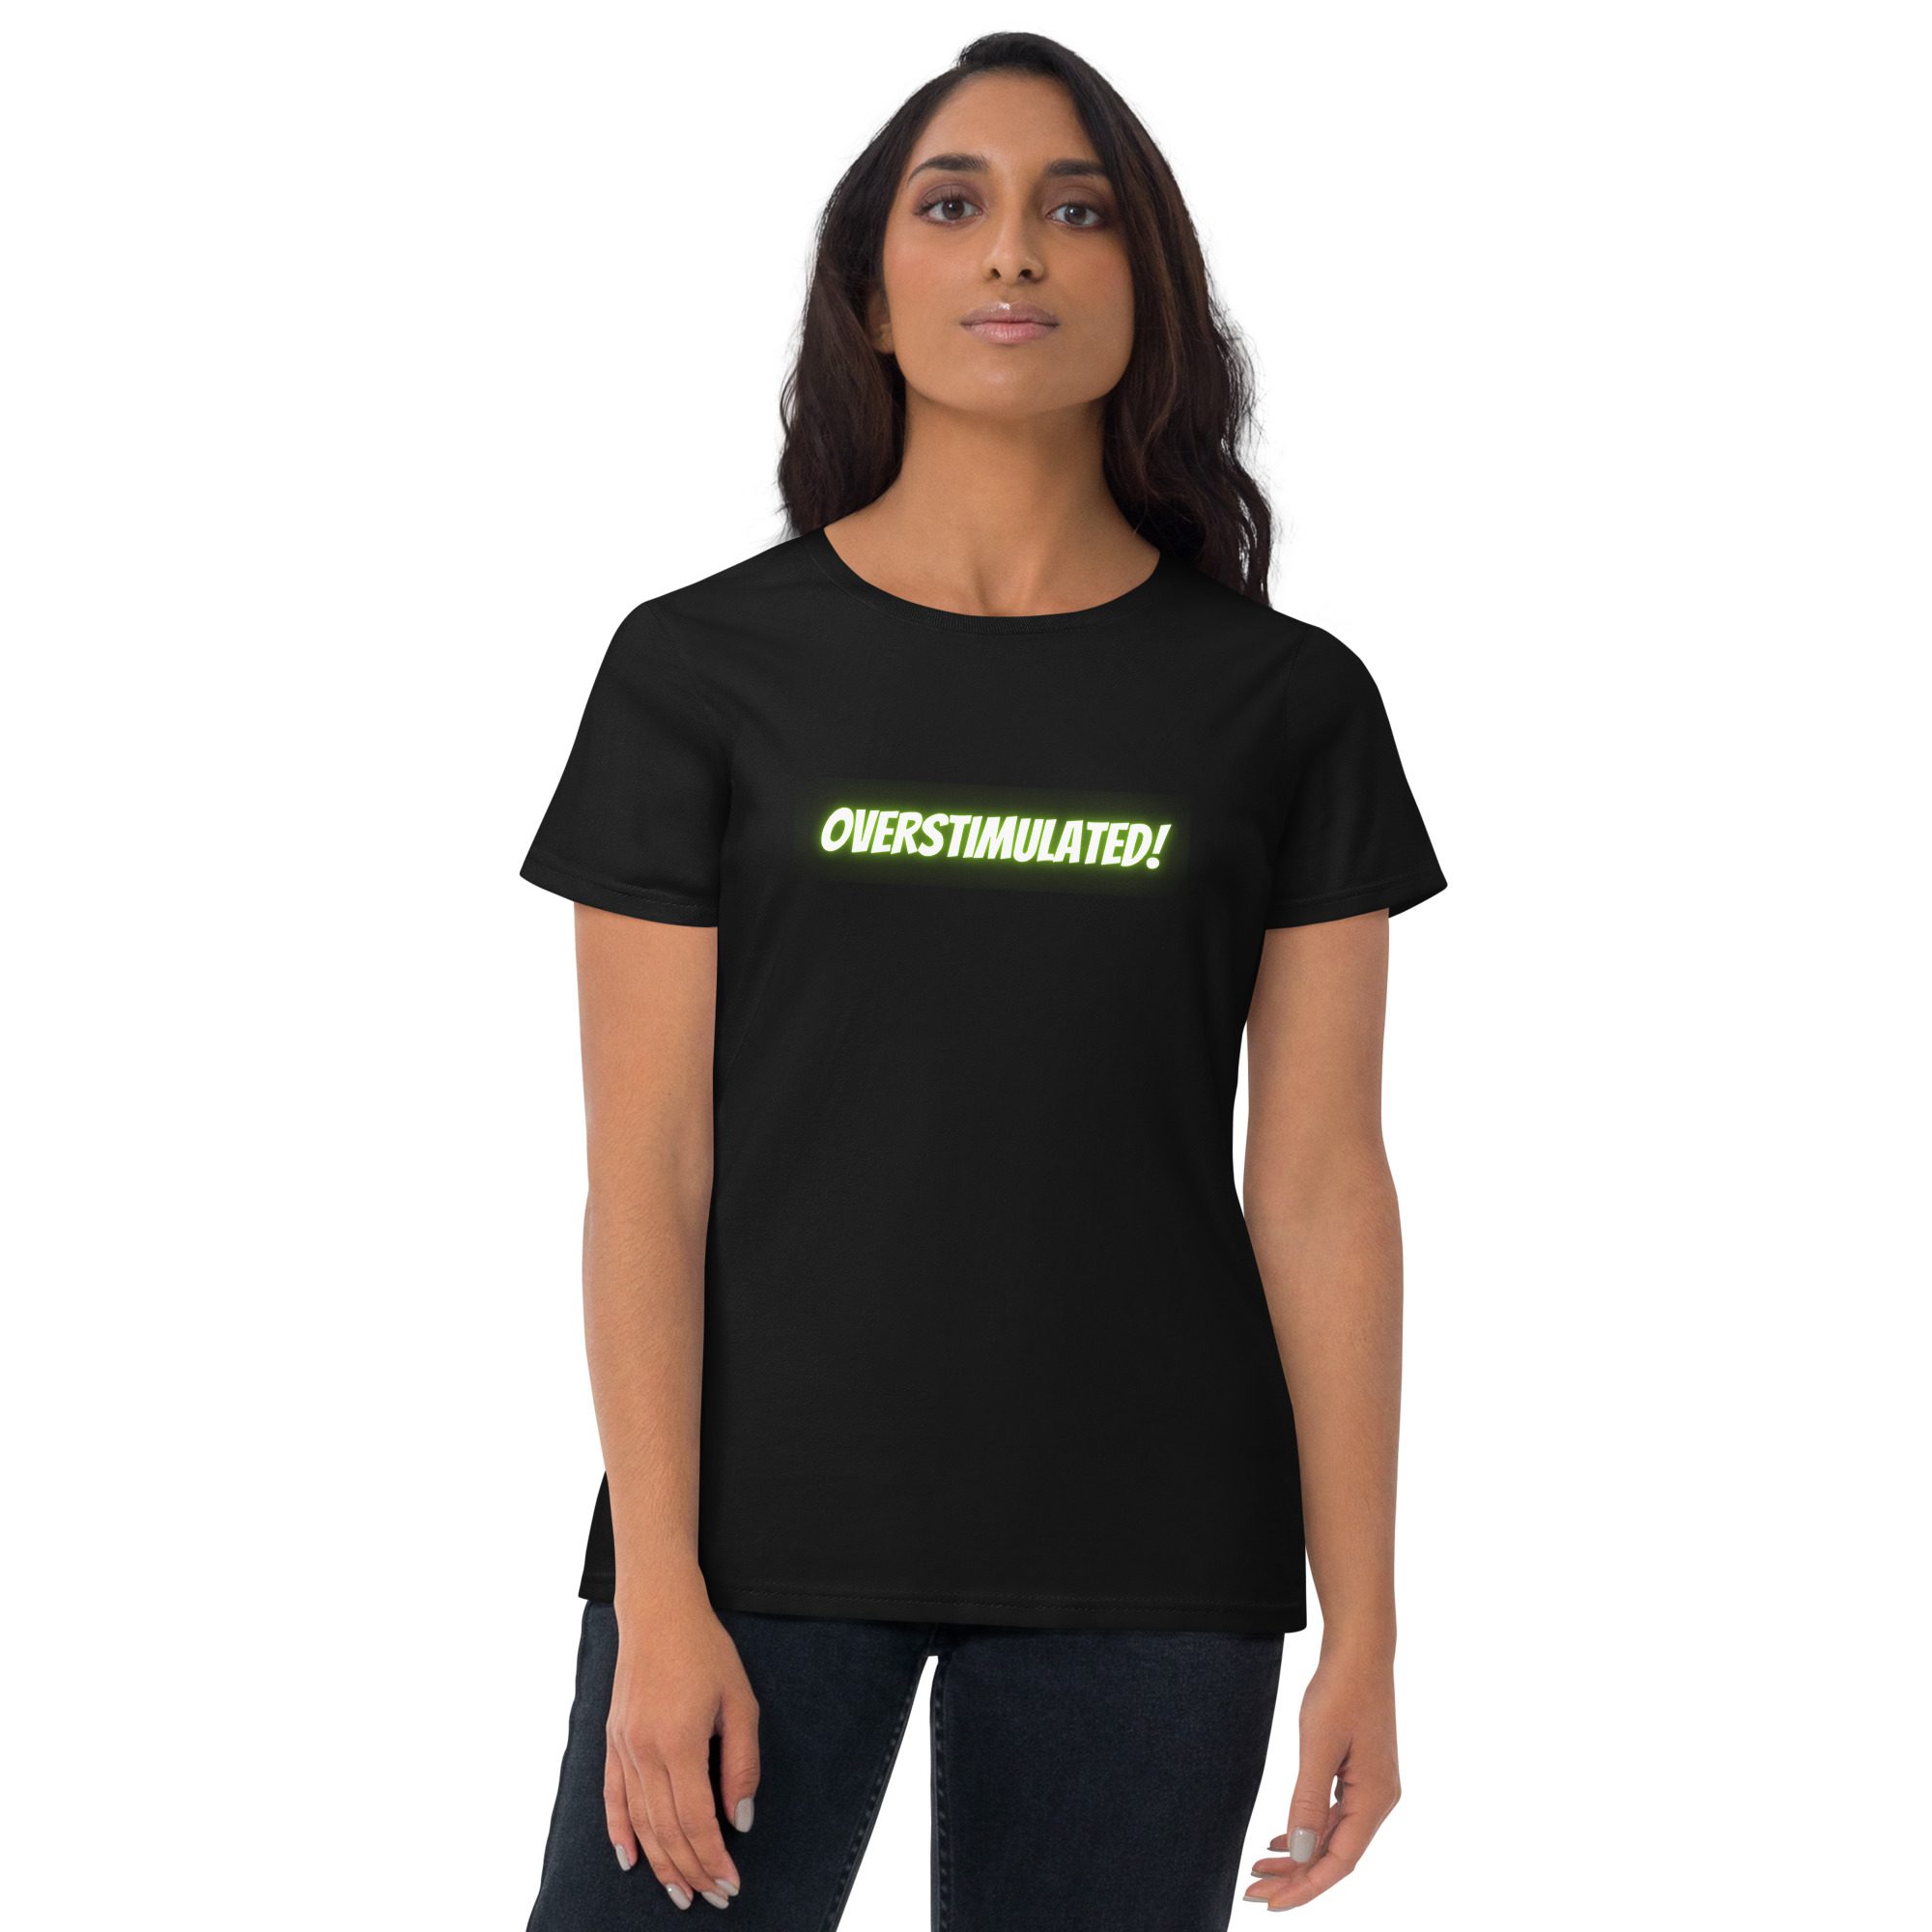 OVERSTIMULATED! Women's T-shirt